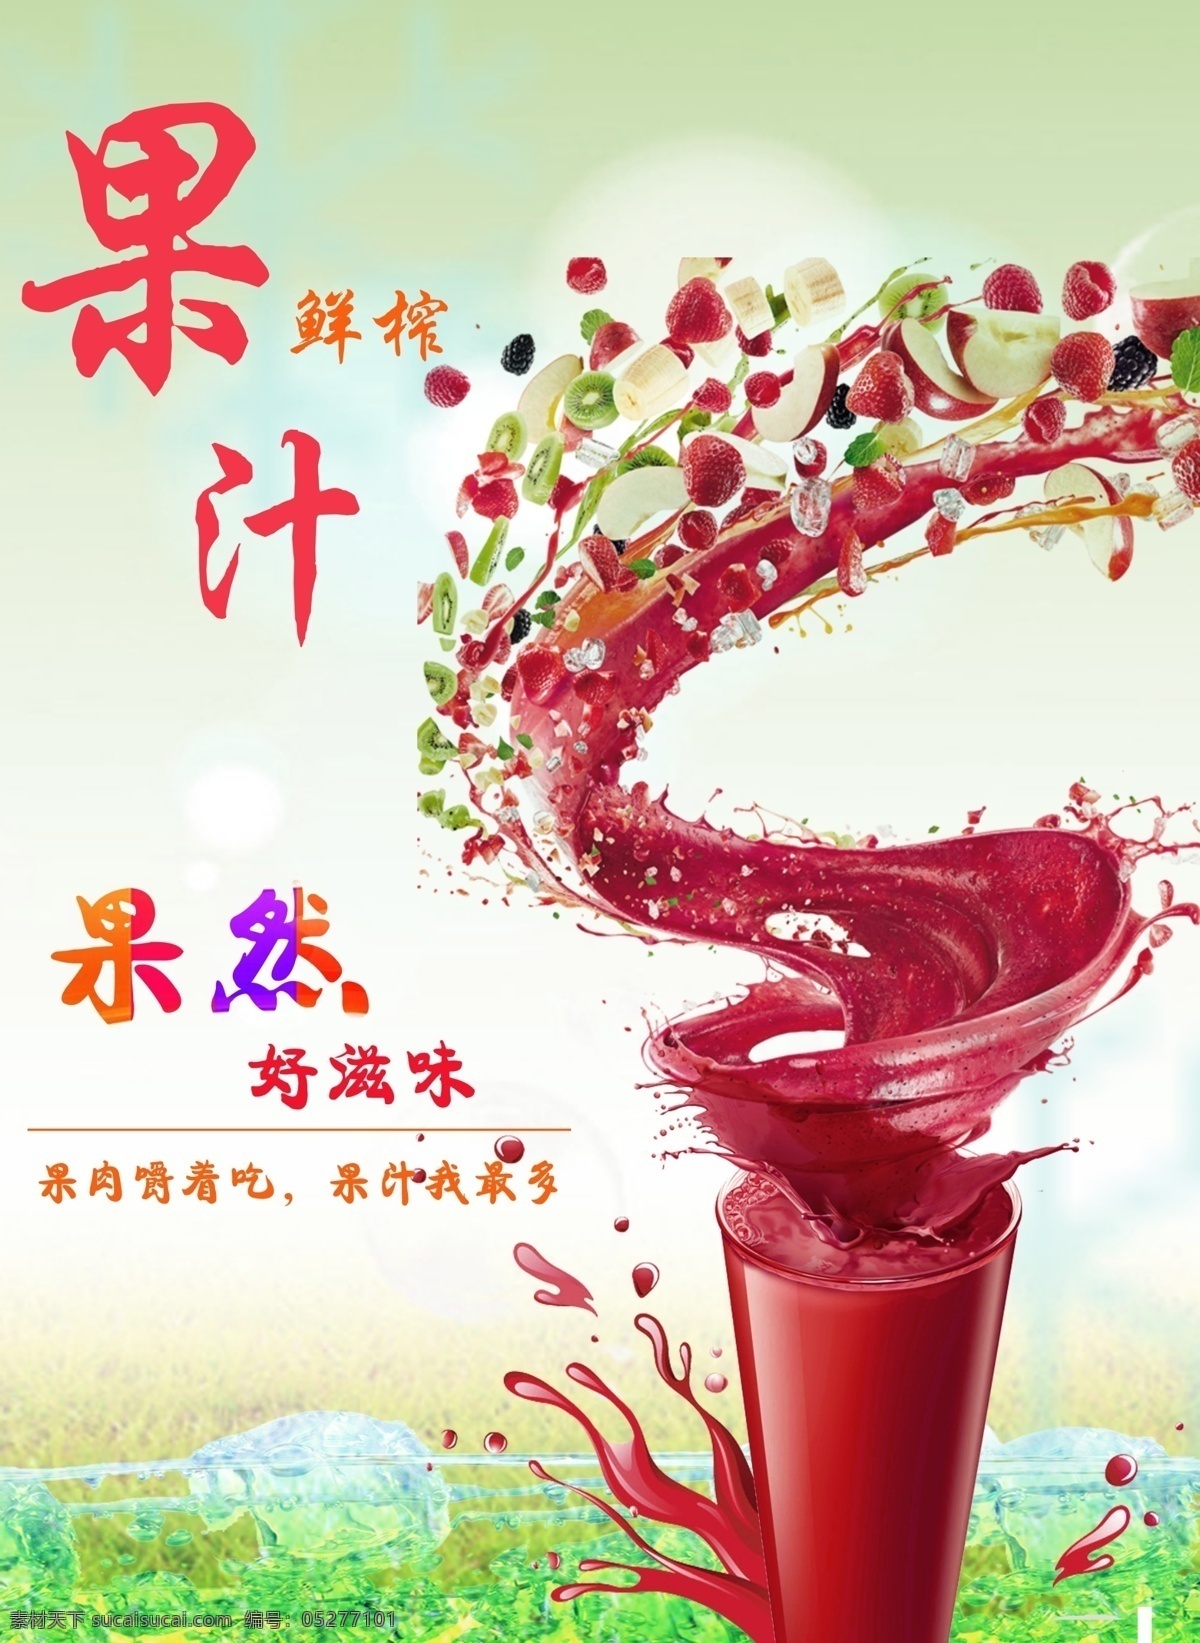 鲜榨果汁宣传 鲜榨果汁 果汁海报 果汁广告 海报